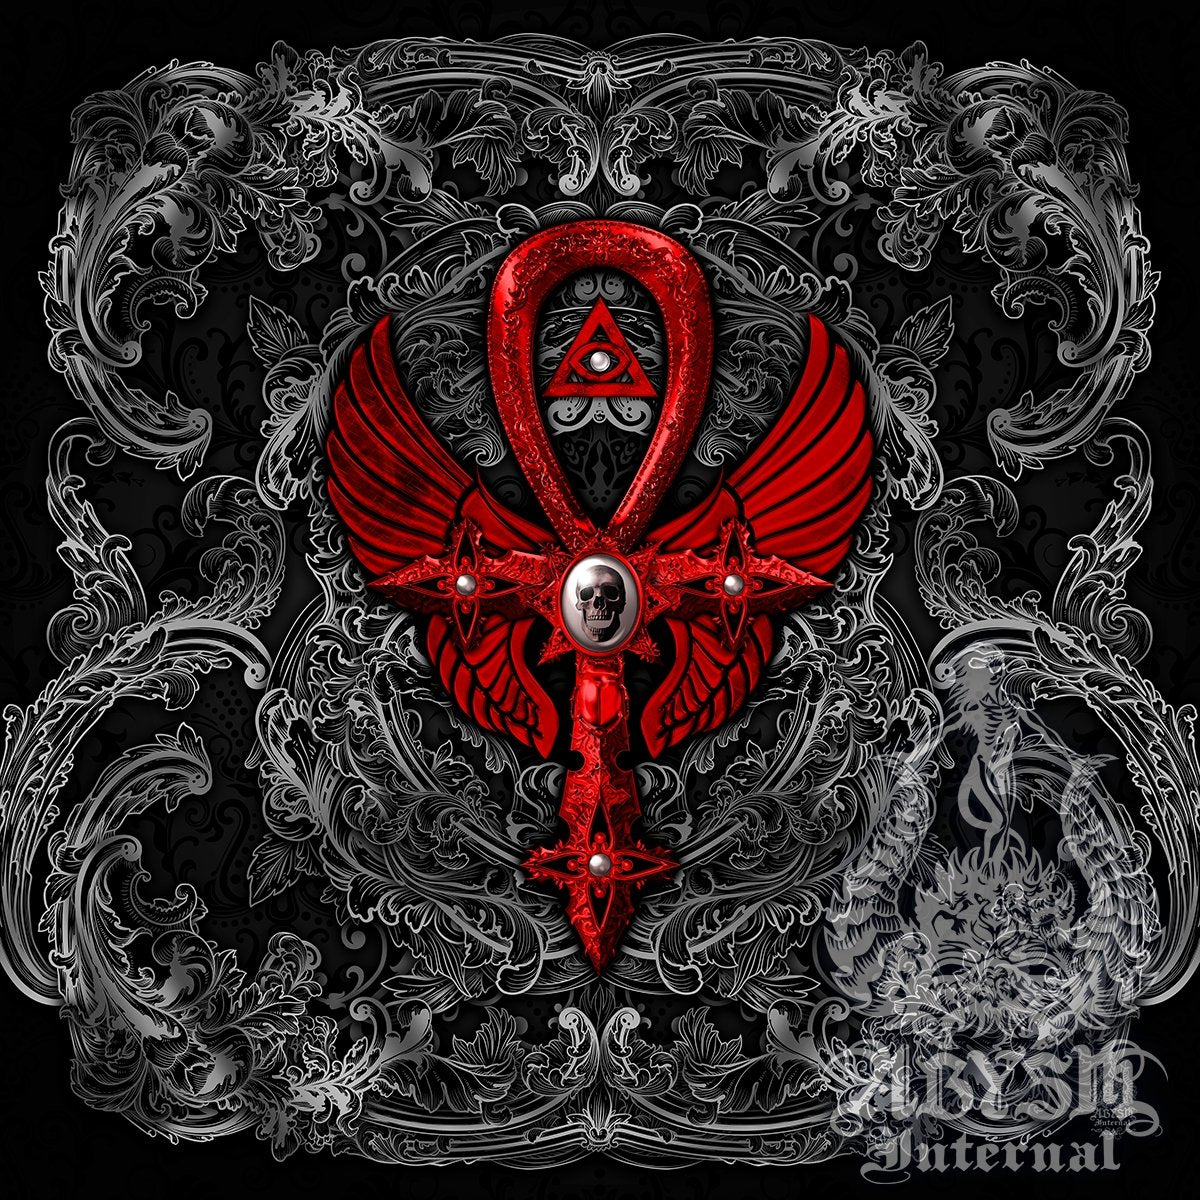 Gothic Ankh - Abysm Internal